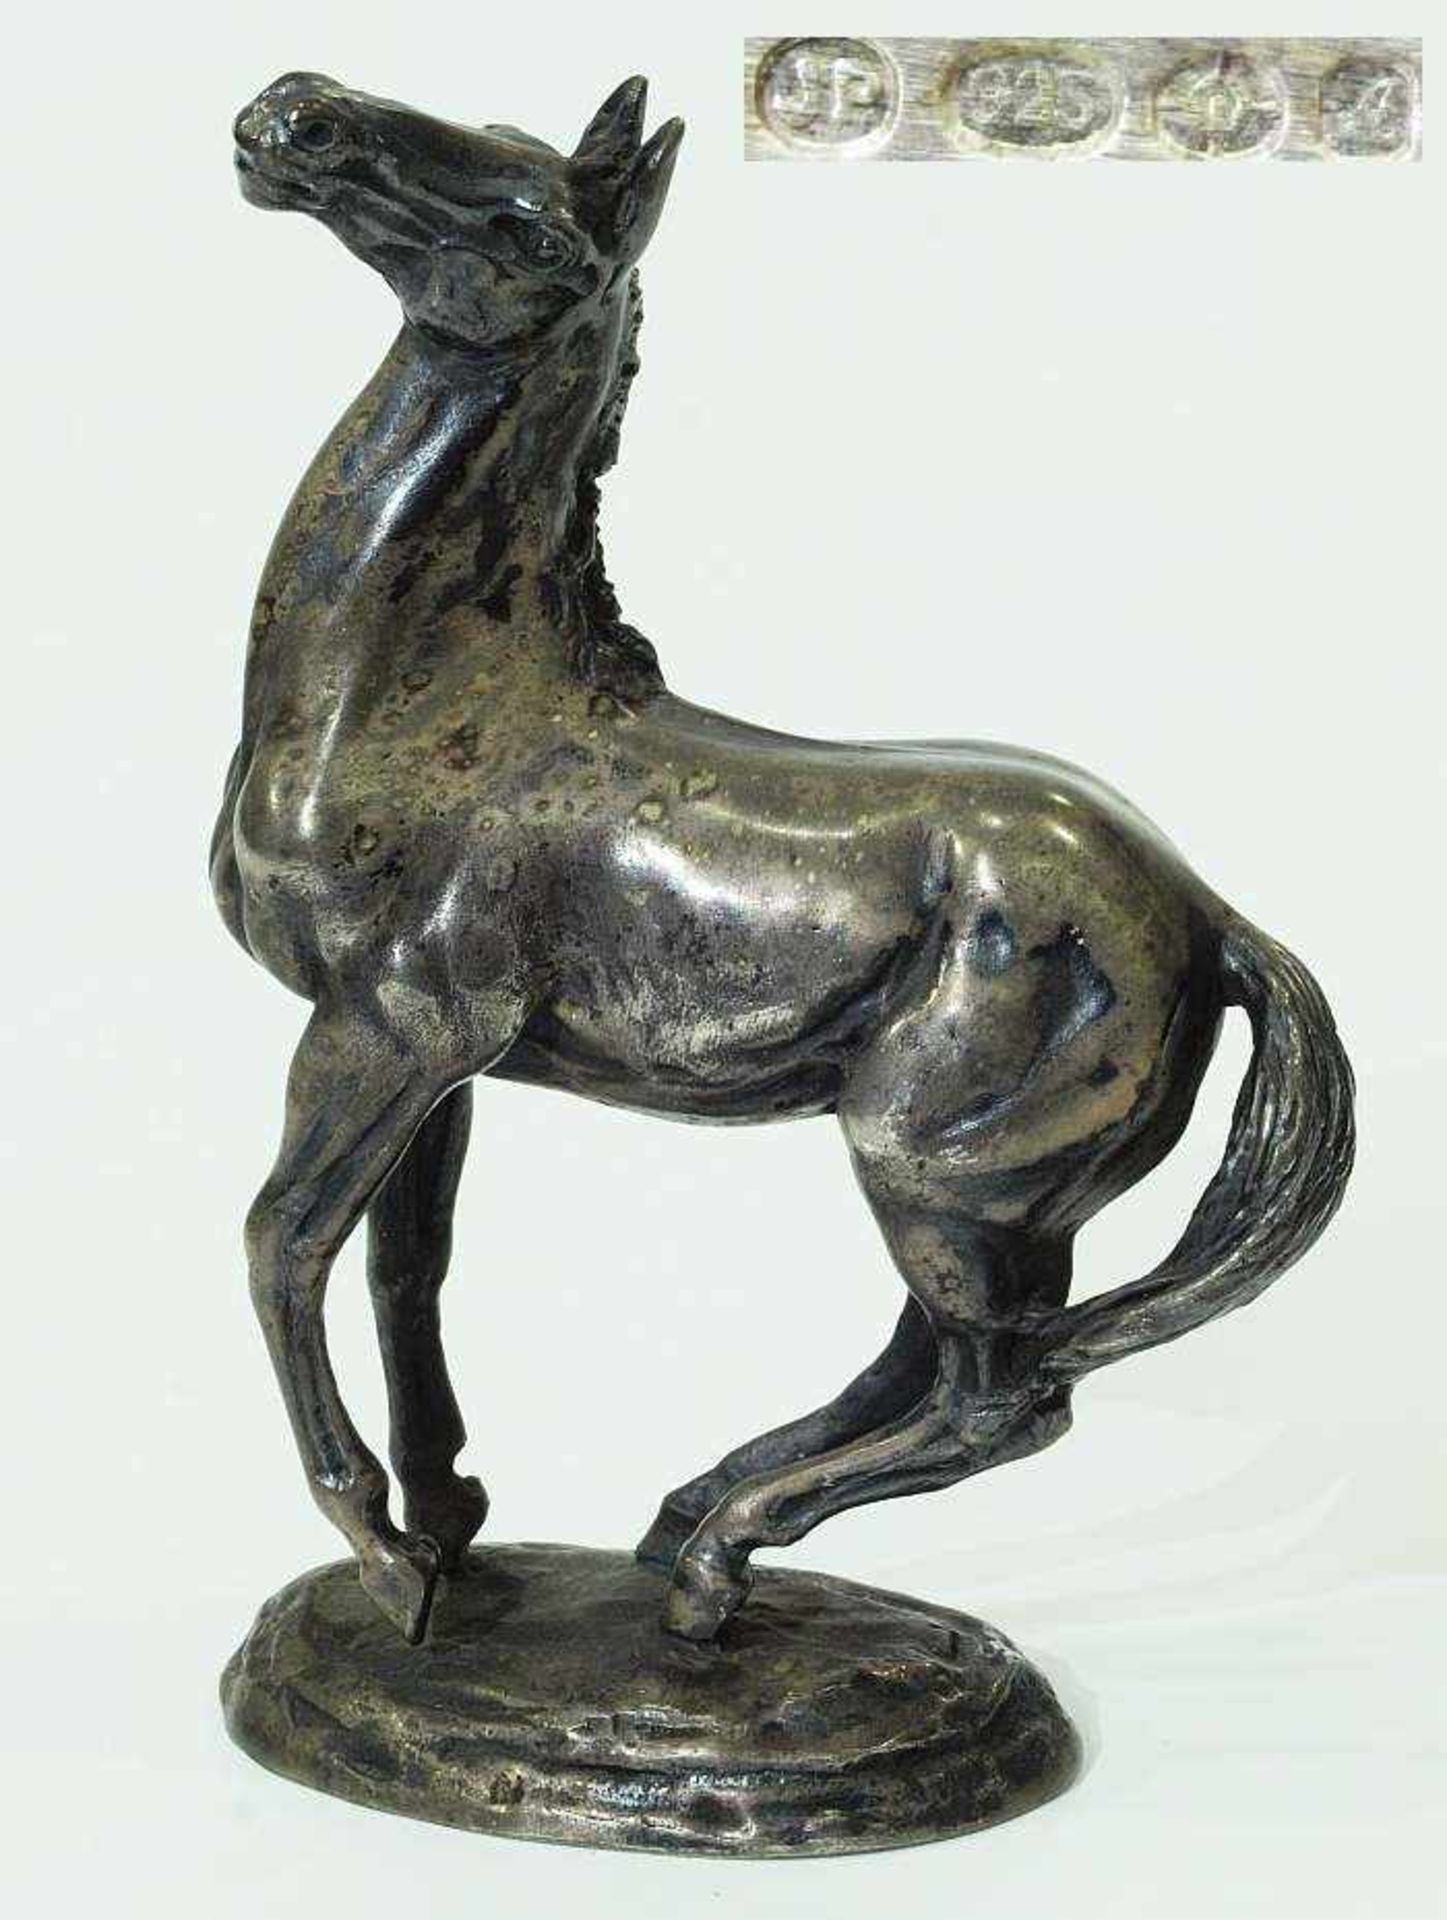 Skulptur "Sich aufbäumendes Pferd". Skulptur "Sich aufbäumendes Pferd", die erste Silberskulptur der